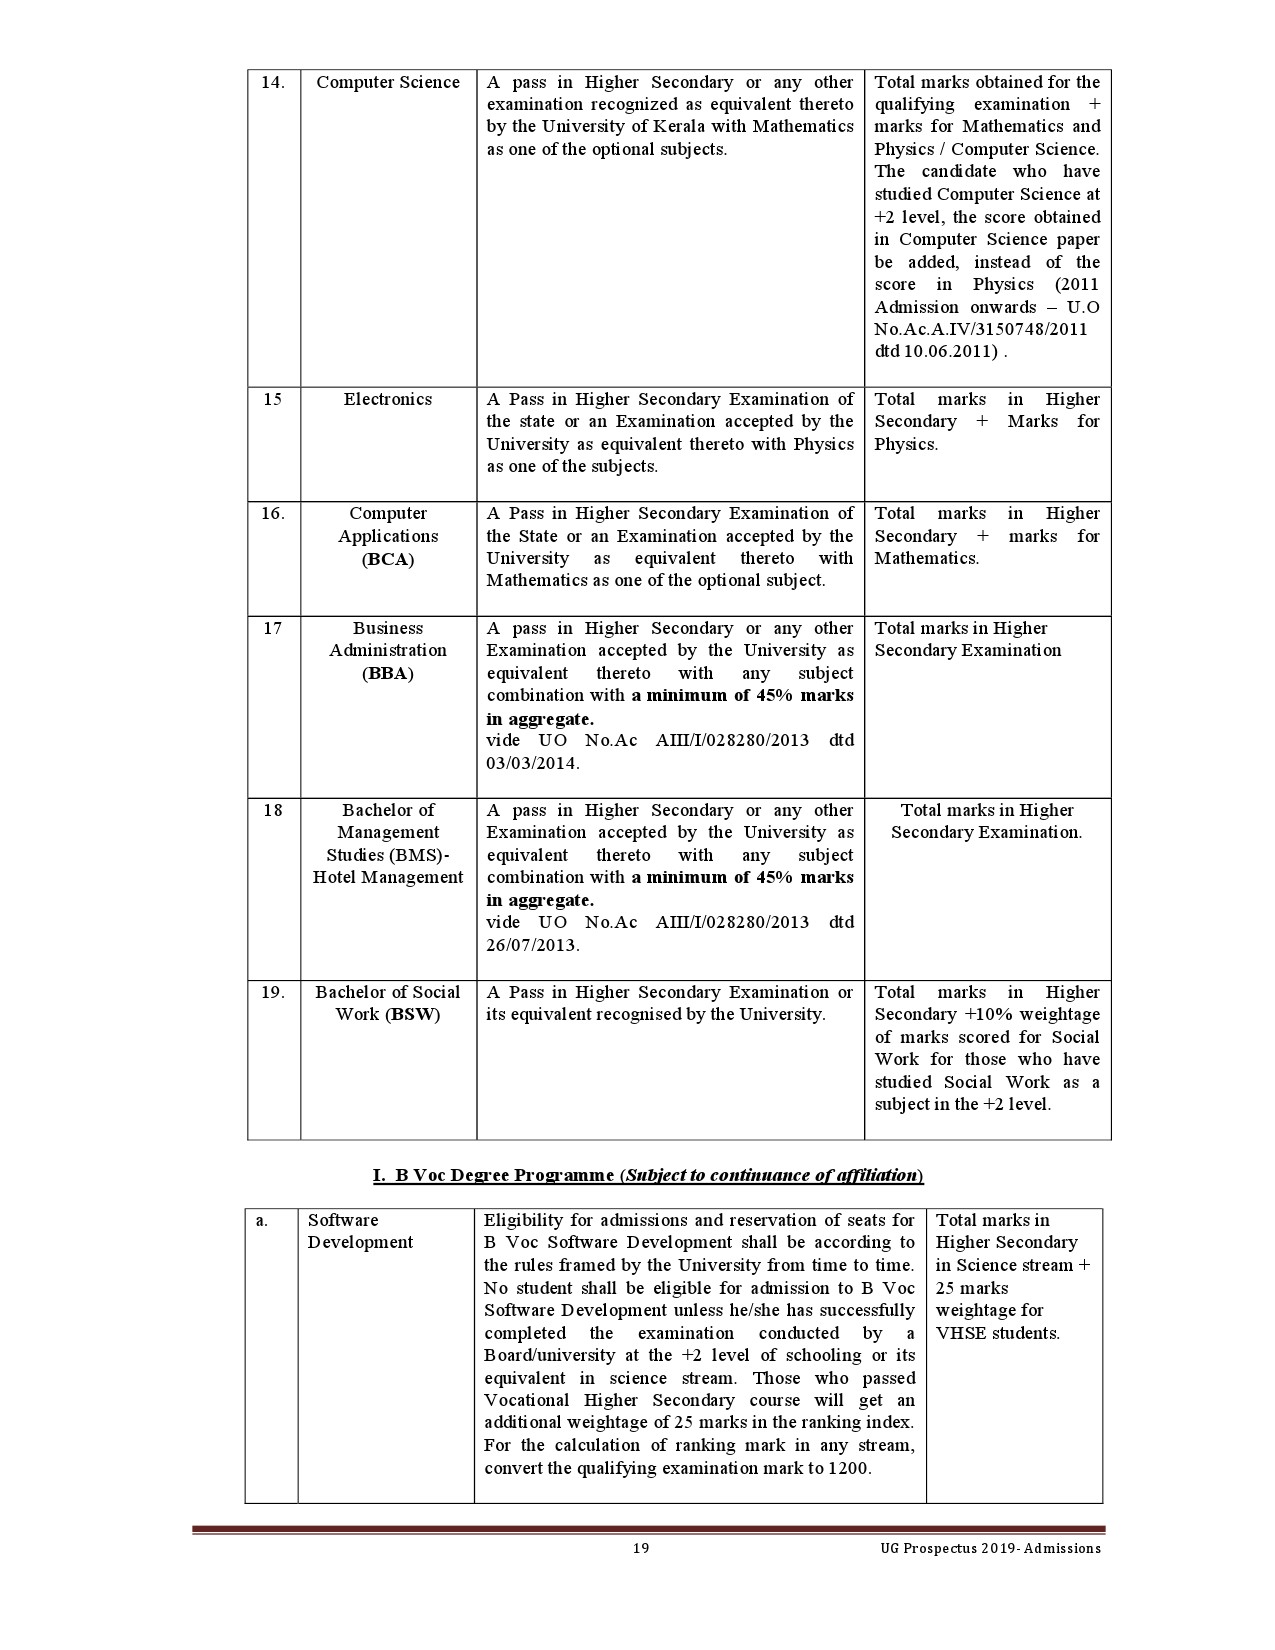 Kerala University UG Admission Prospectus 2019 - Notification Image 19